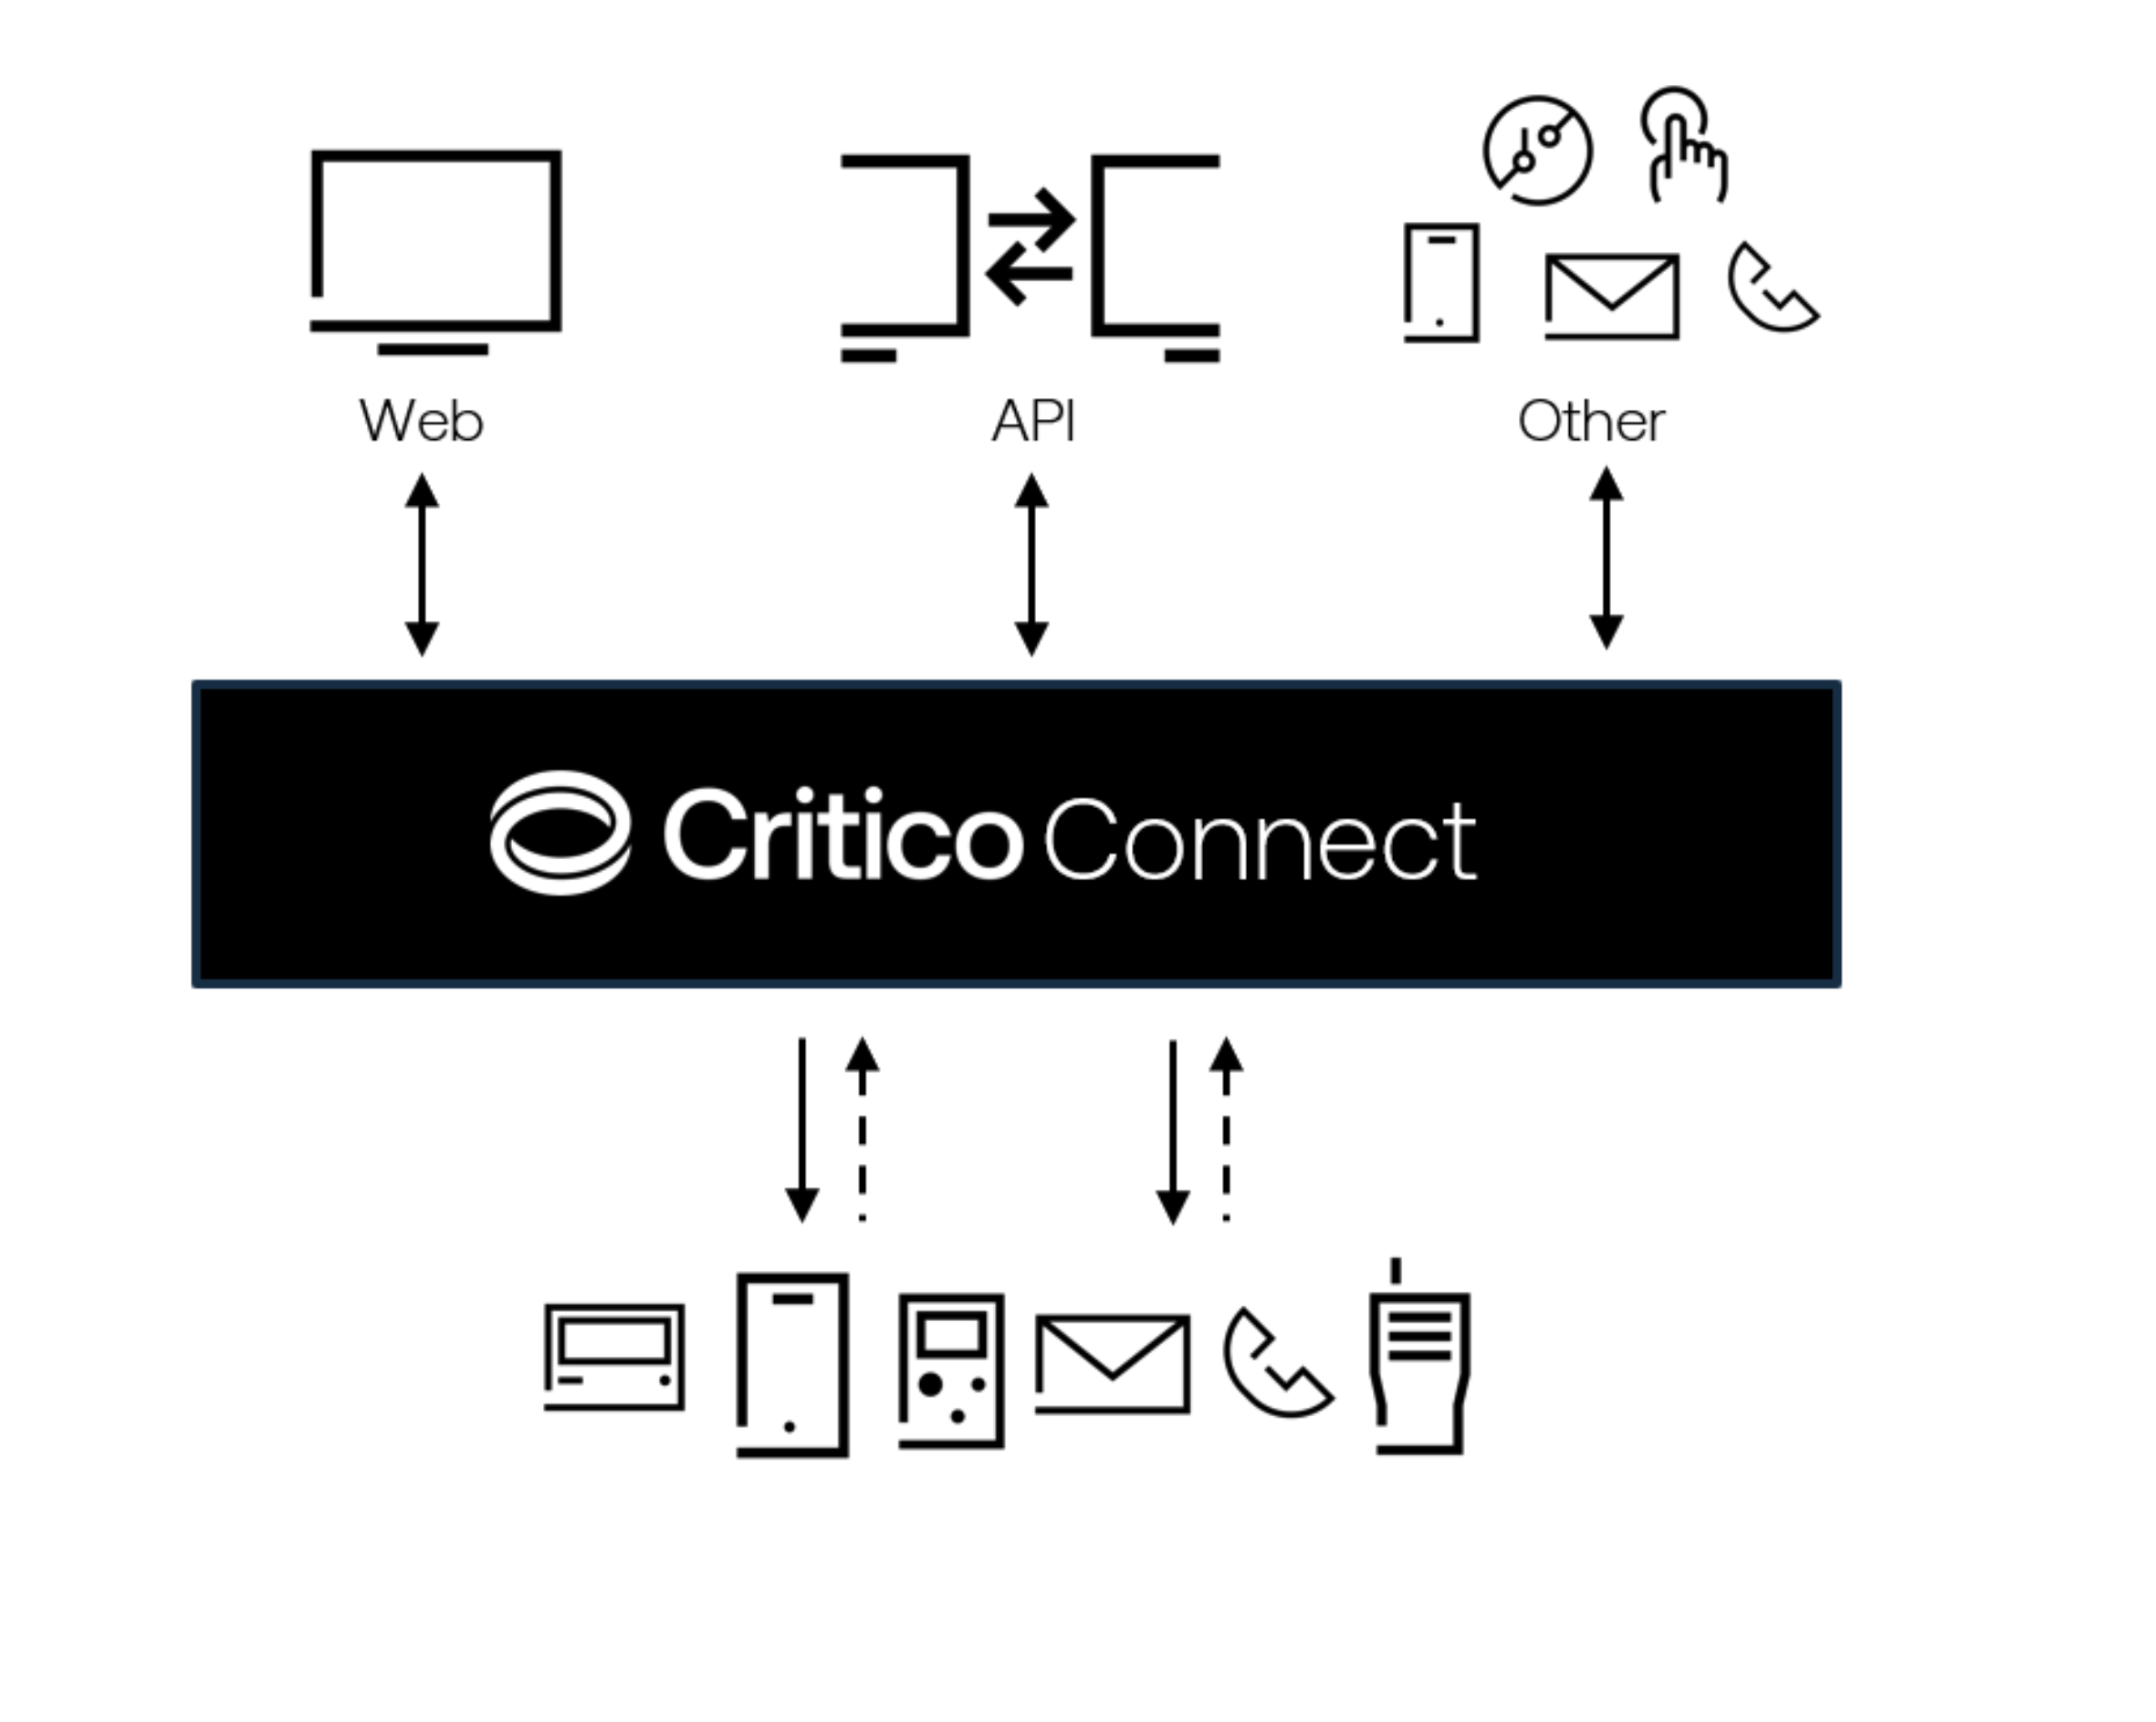 Critico Connect